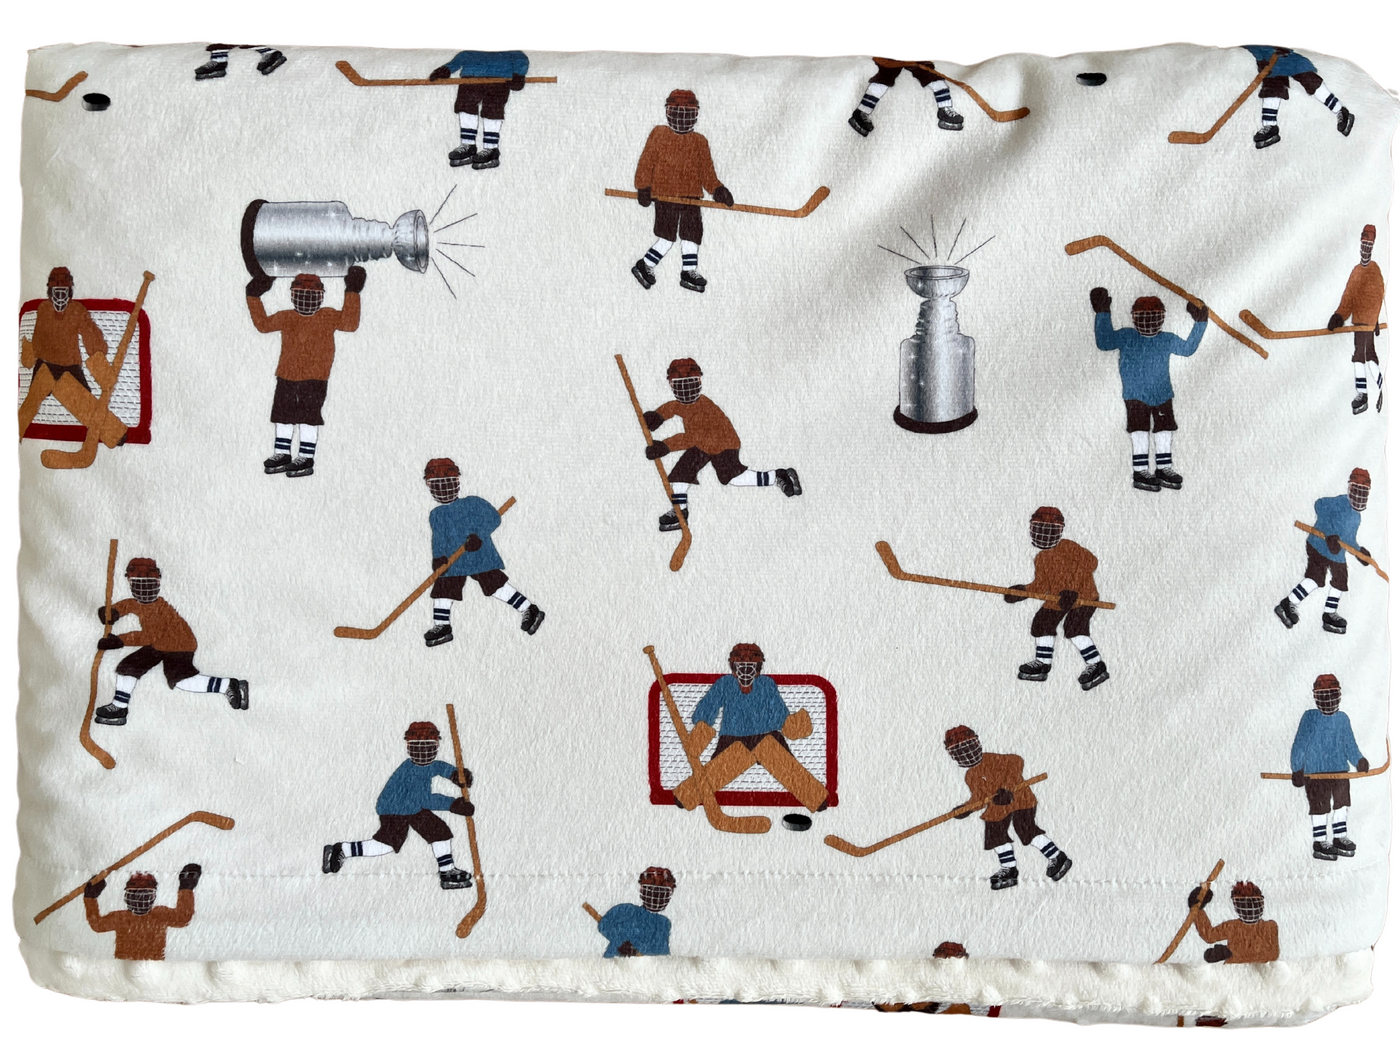 Couverture Géante : Joueurs de hockey (bleu vs brun)